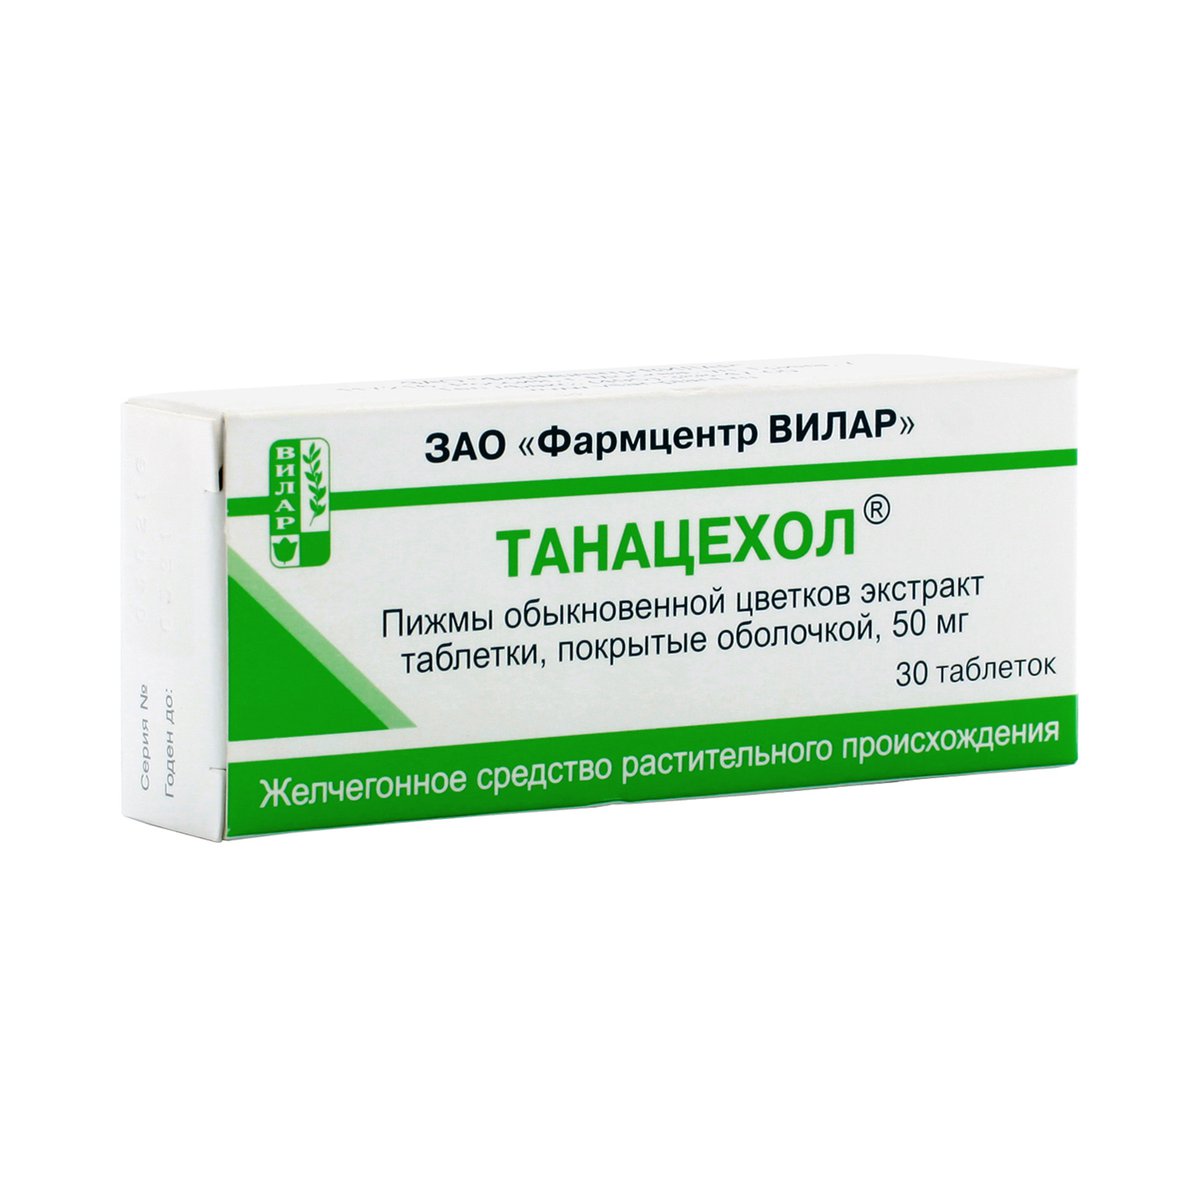 Танацехол (таблетки, 30 шт, 50 мг) - цена,  онлайн  .